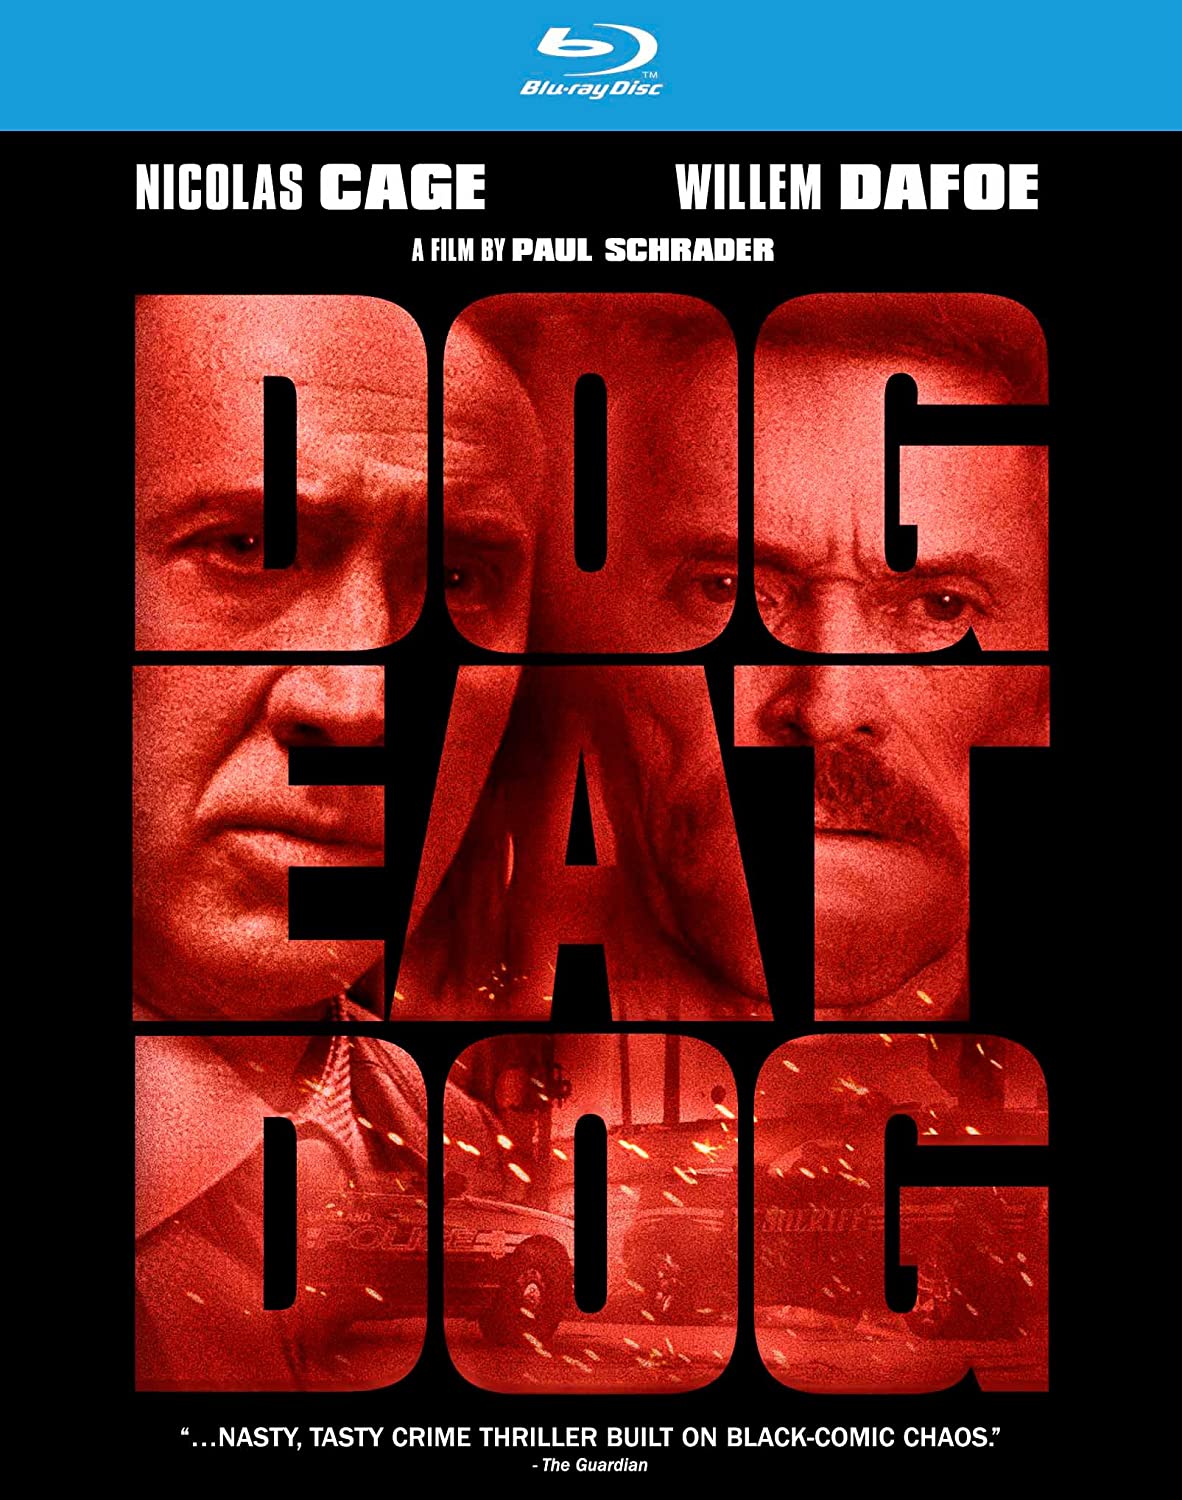 Dog Eat Dog - Darkside Records